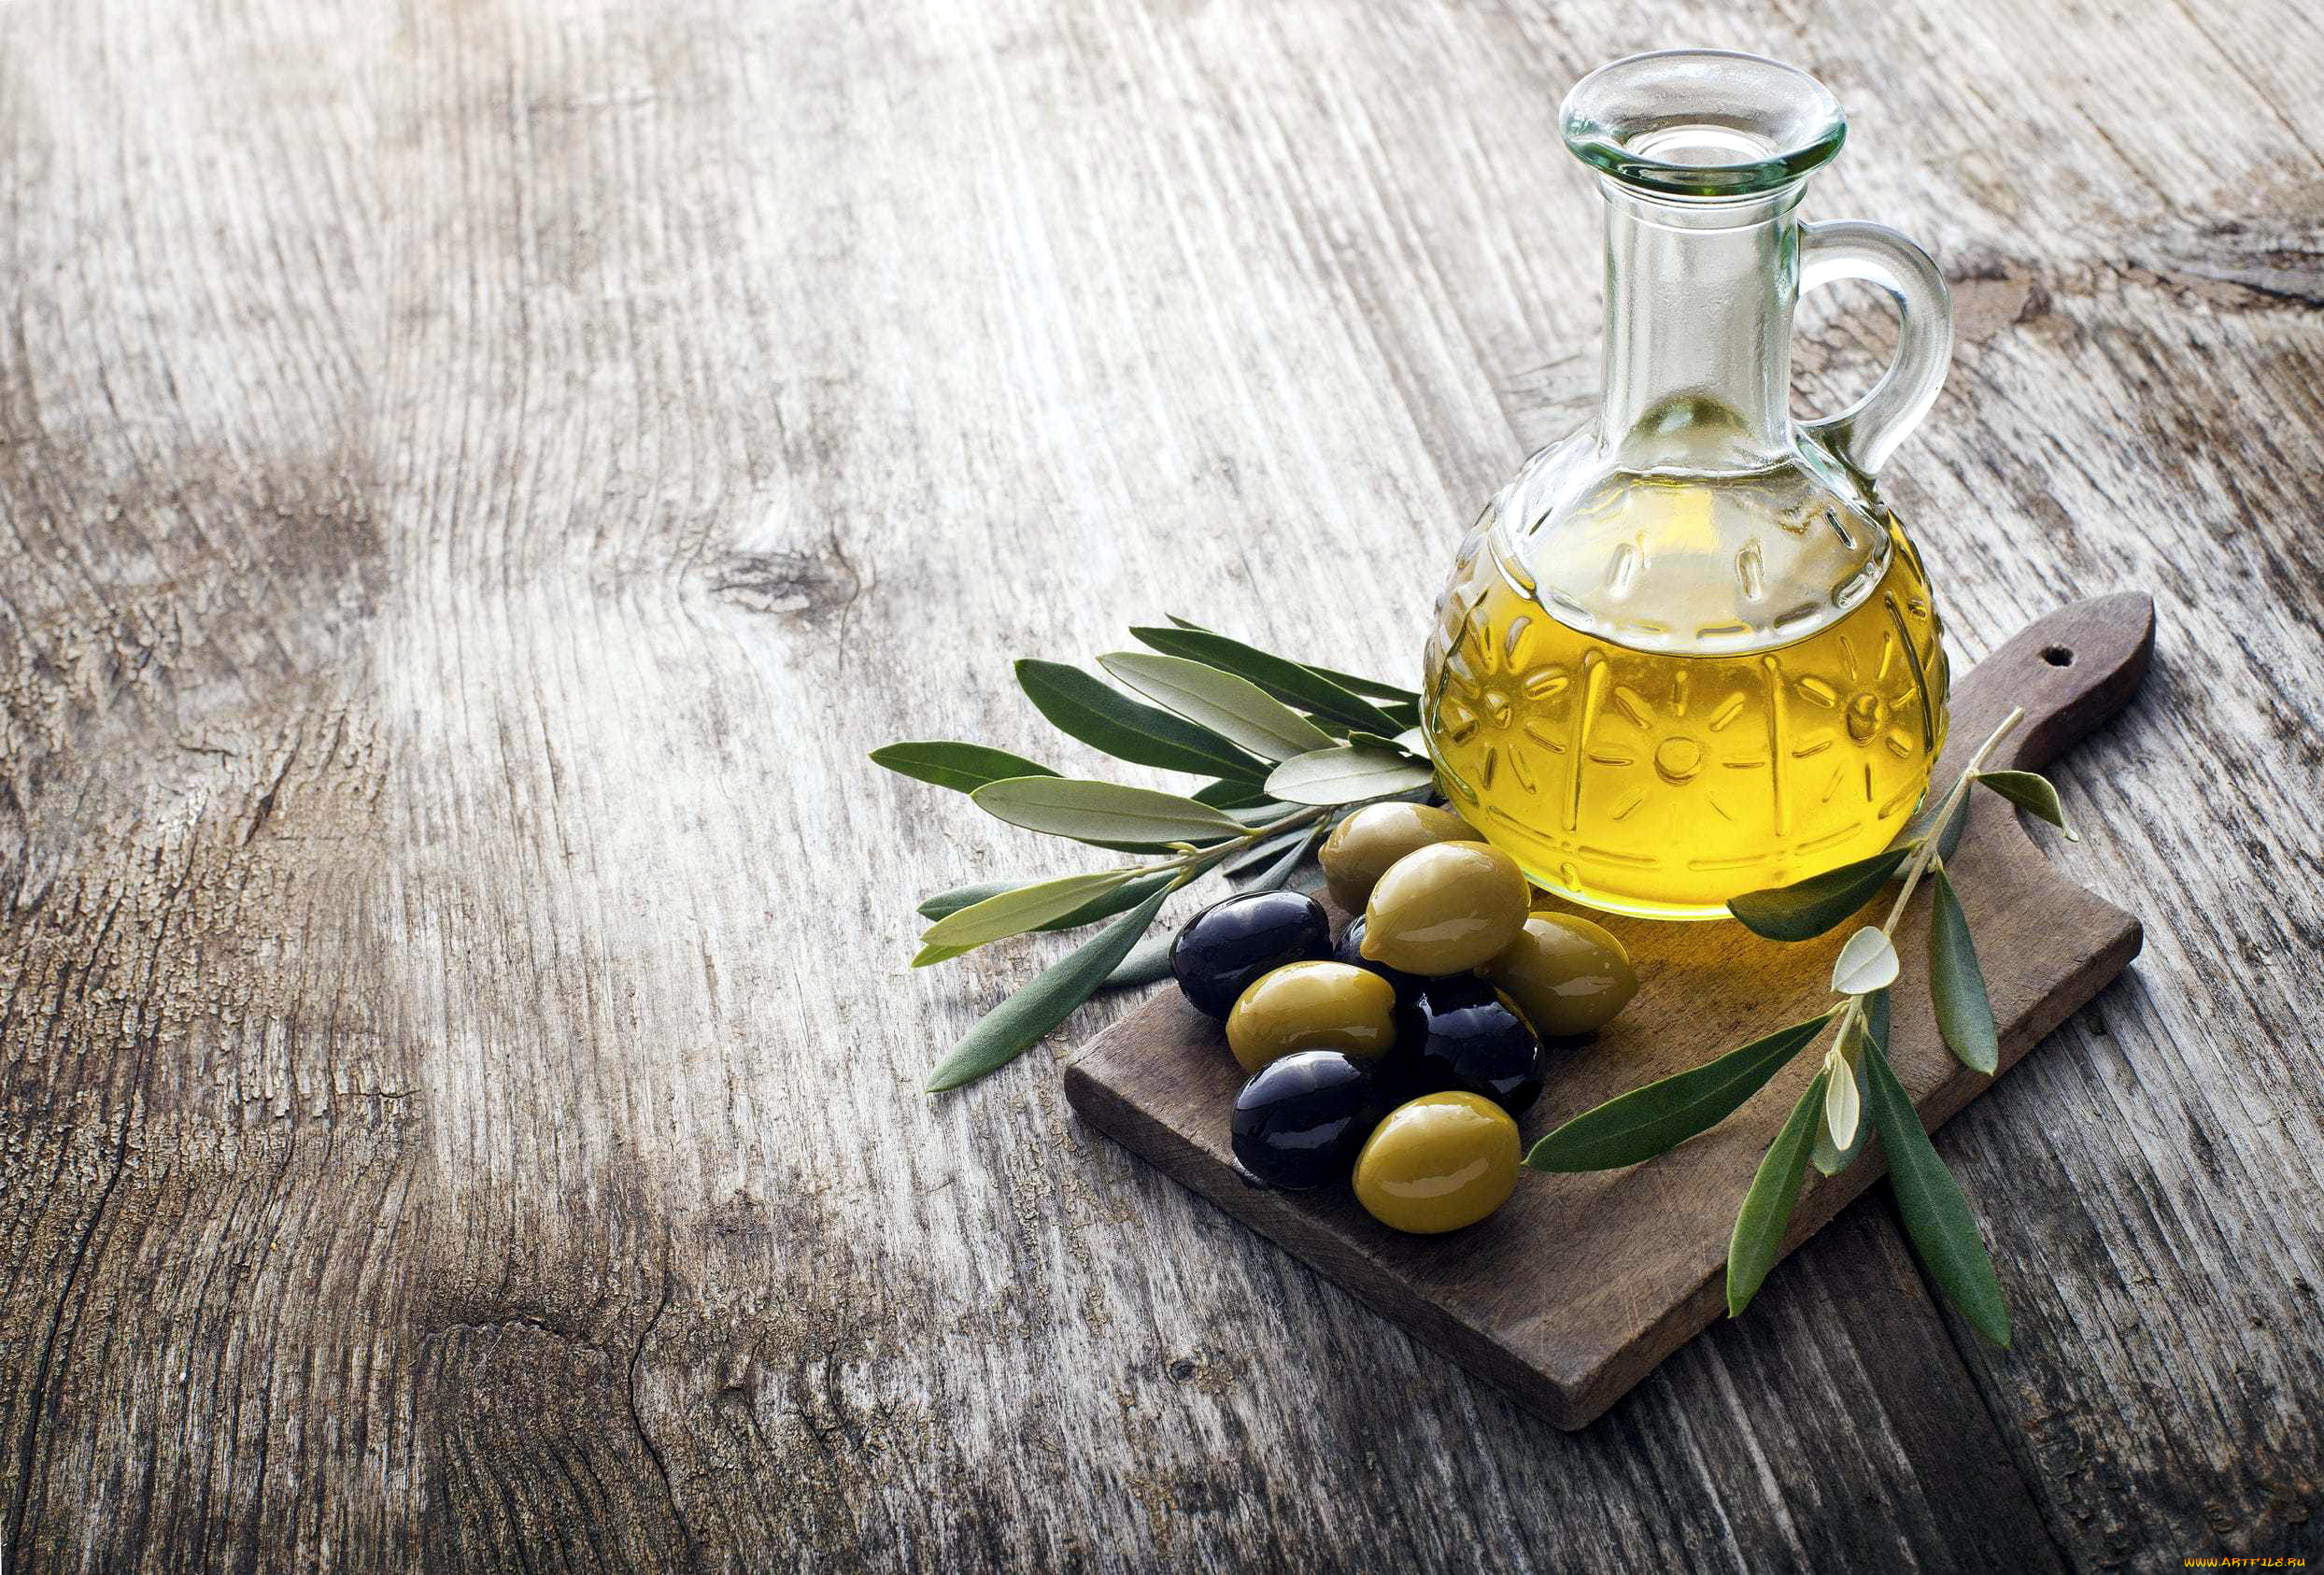 Оливковое масло является. Оливковое масло Olive Tree. Олив Ойл масло оливковое. Оливковое масло Extra Virgin фон. Olive Oil масло оливковое.